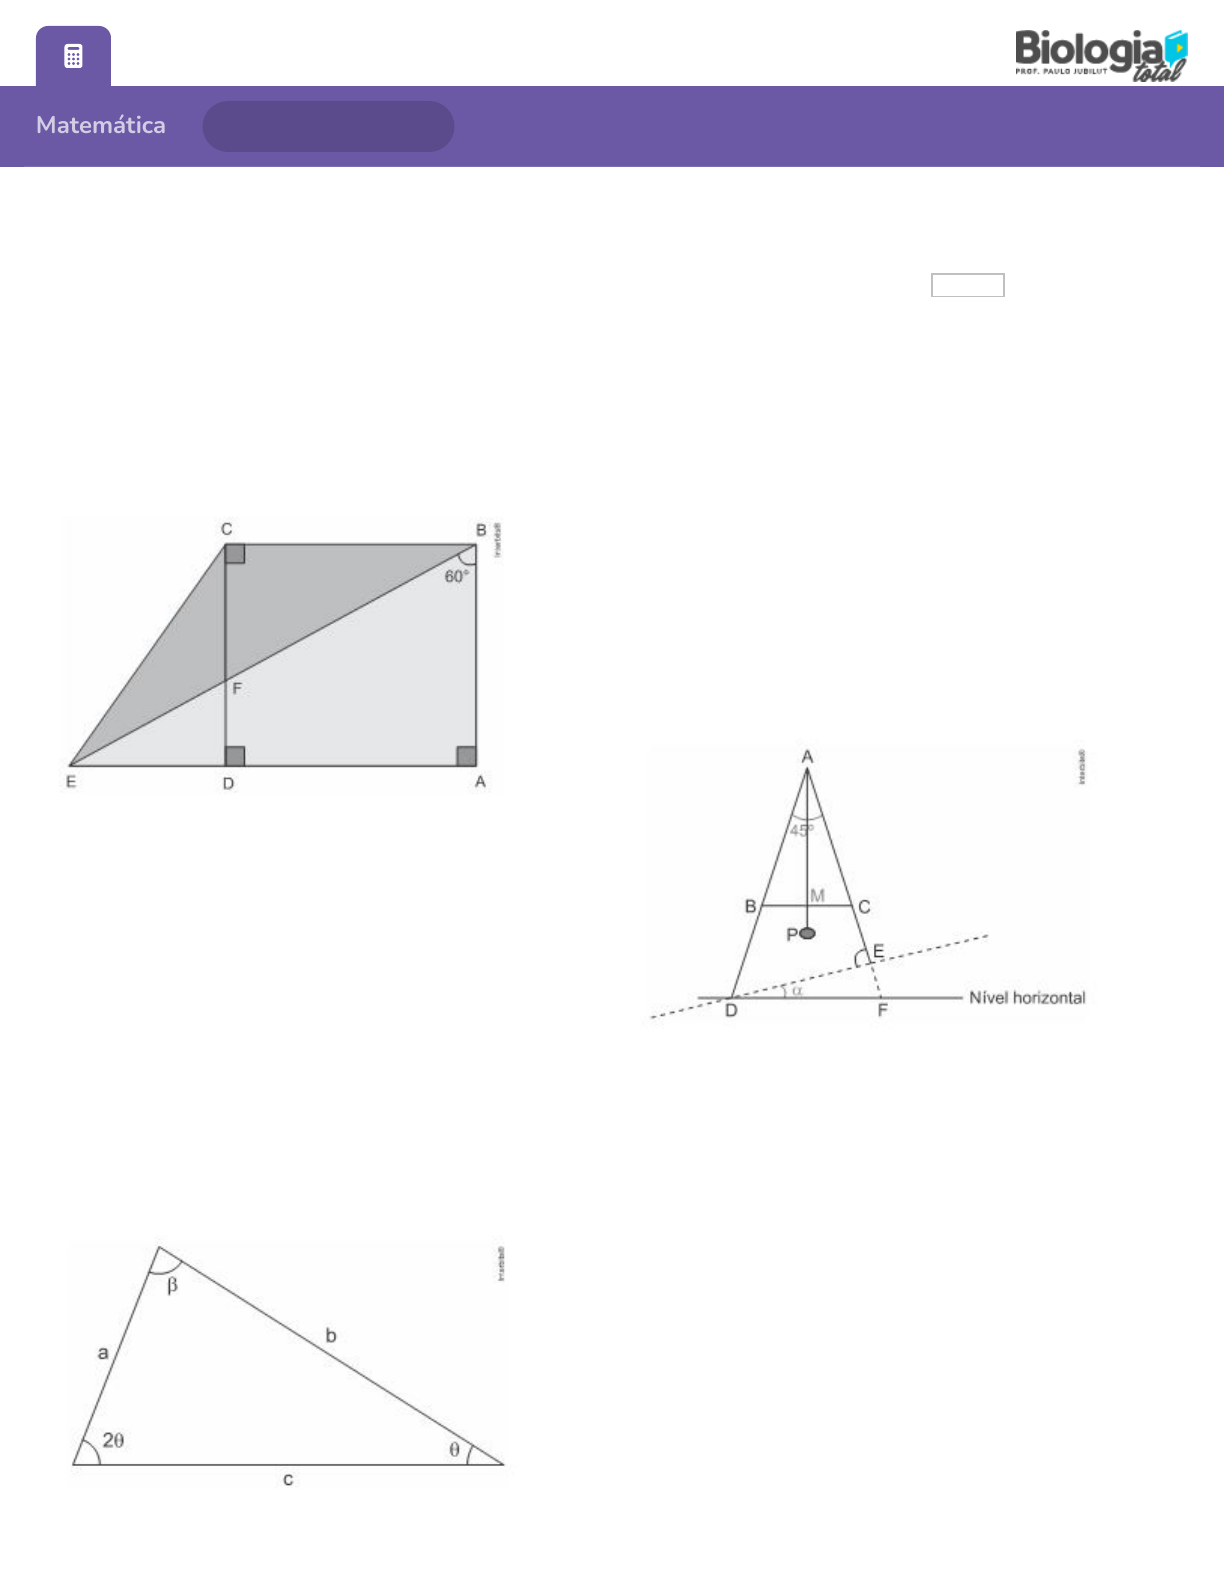 Problema de Geometria 104: Cuadrilátero, Diagonales, Angulo, 90